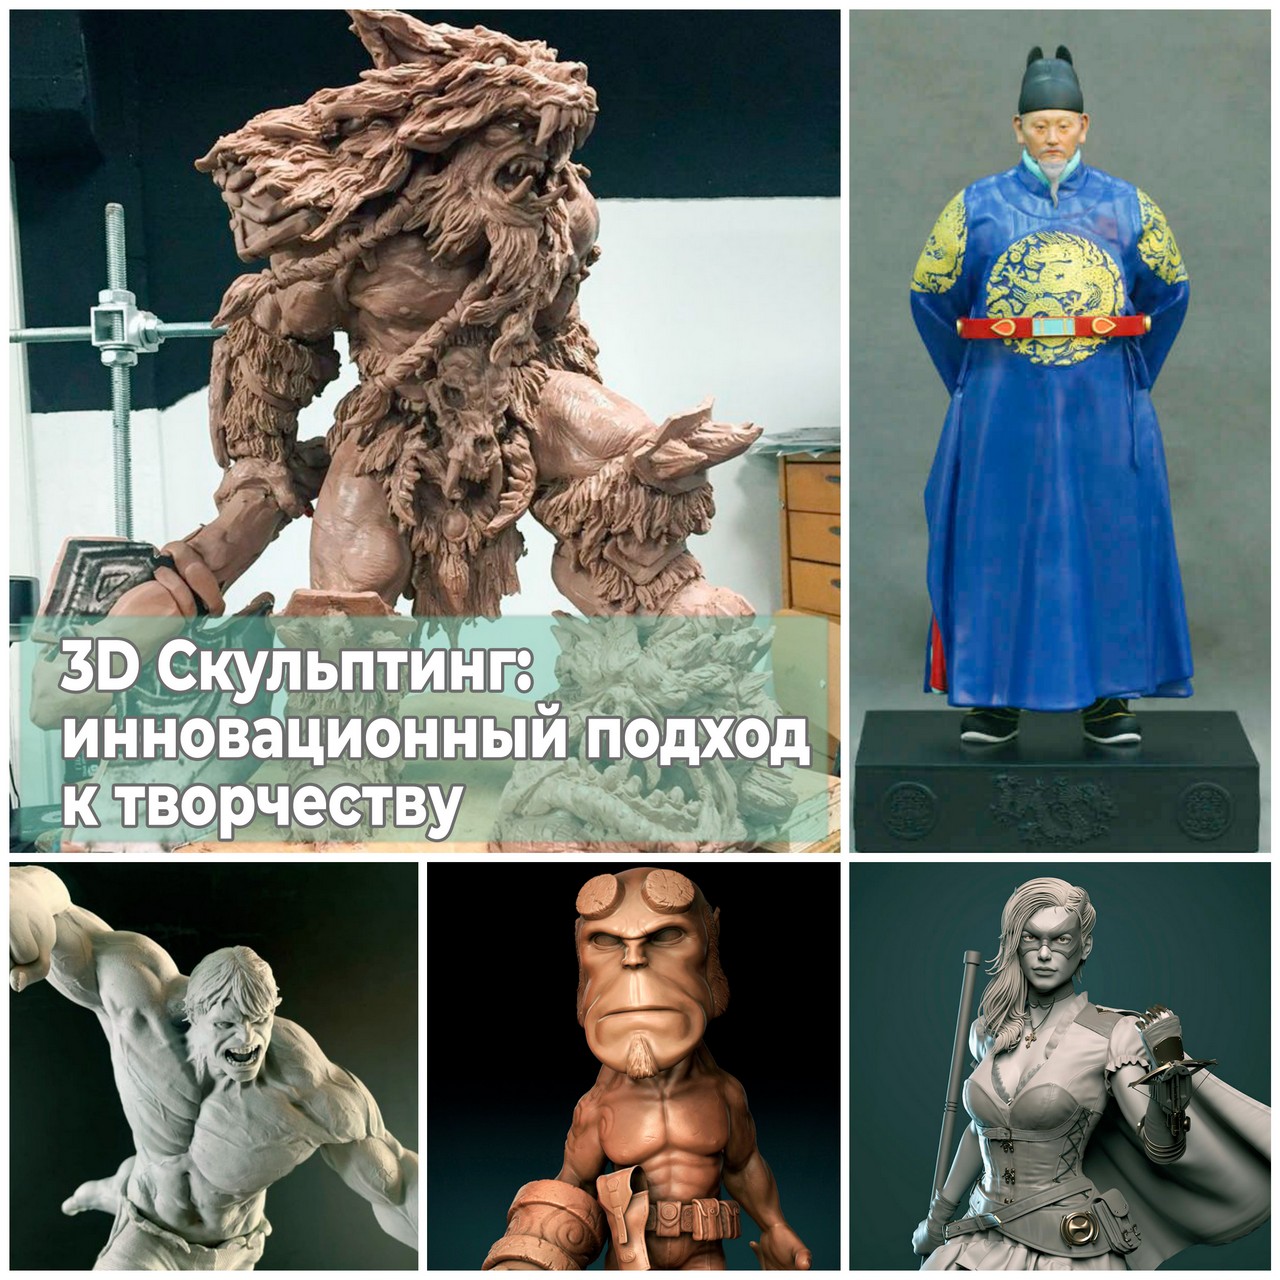 3D Скульптинг инновационный подход к творчеству